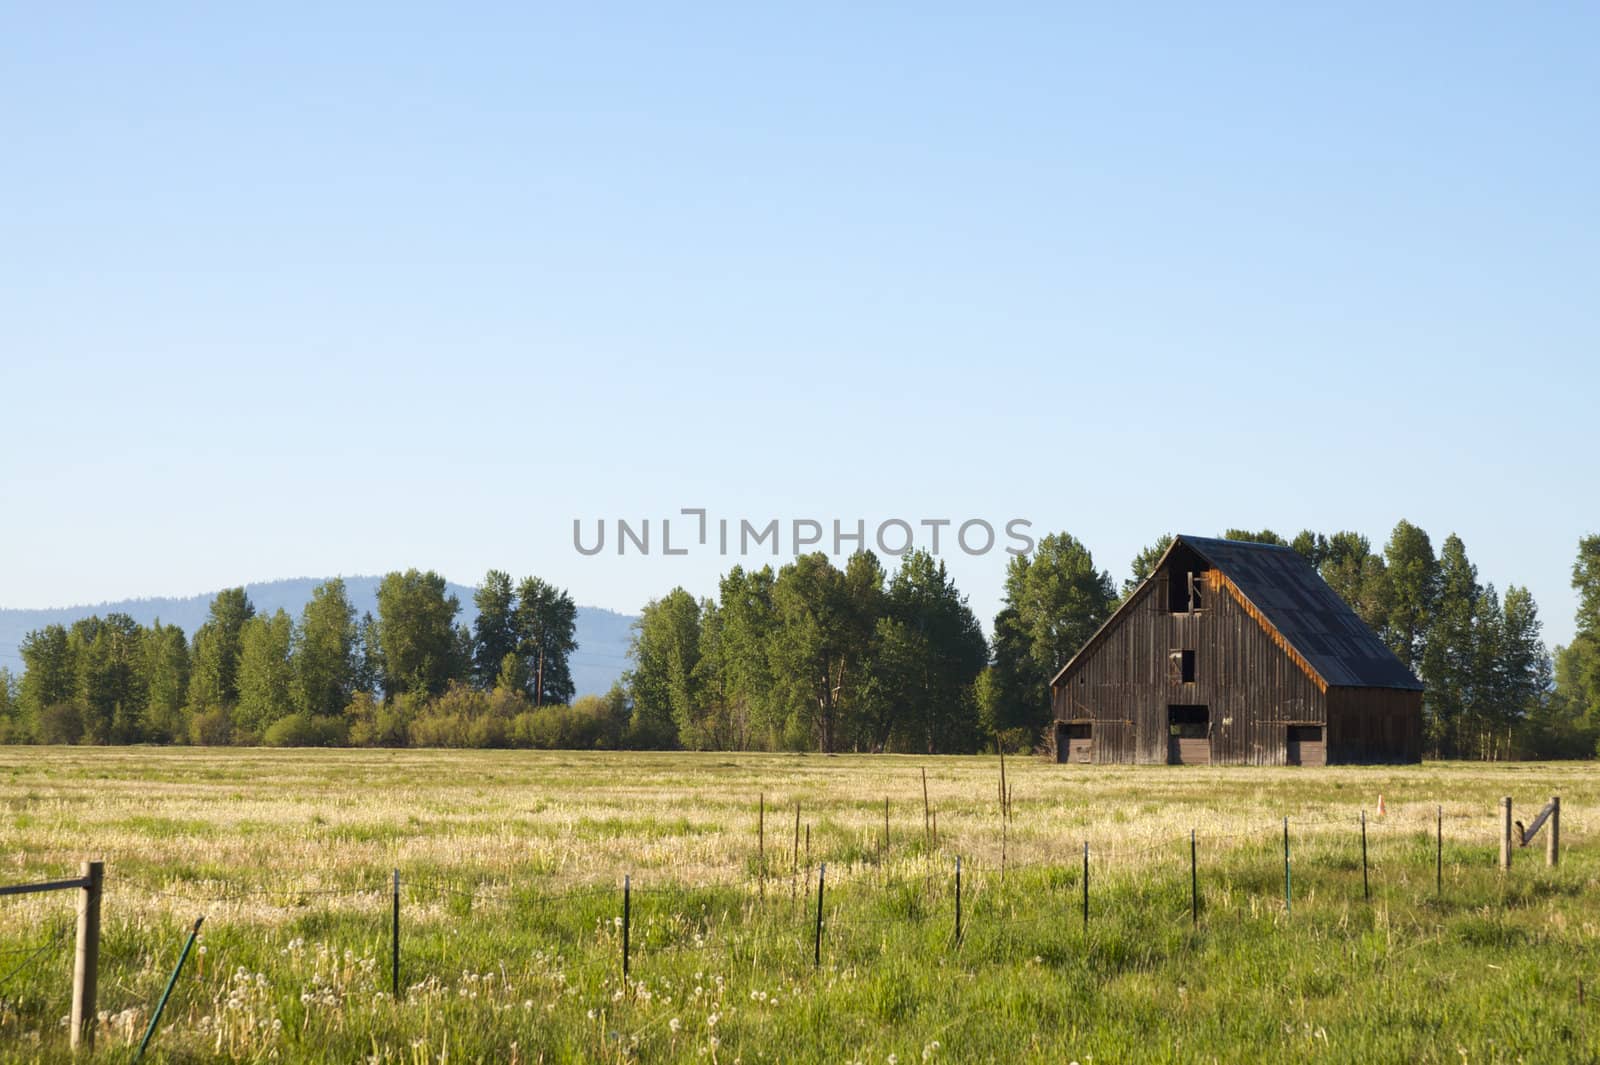 Country Barn in Field by bobkeenan